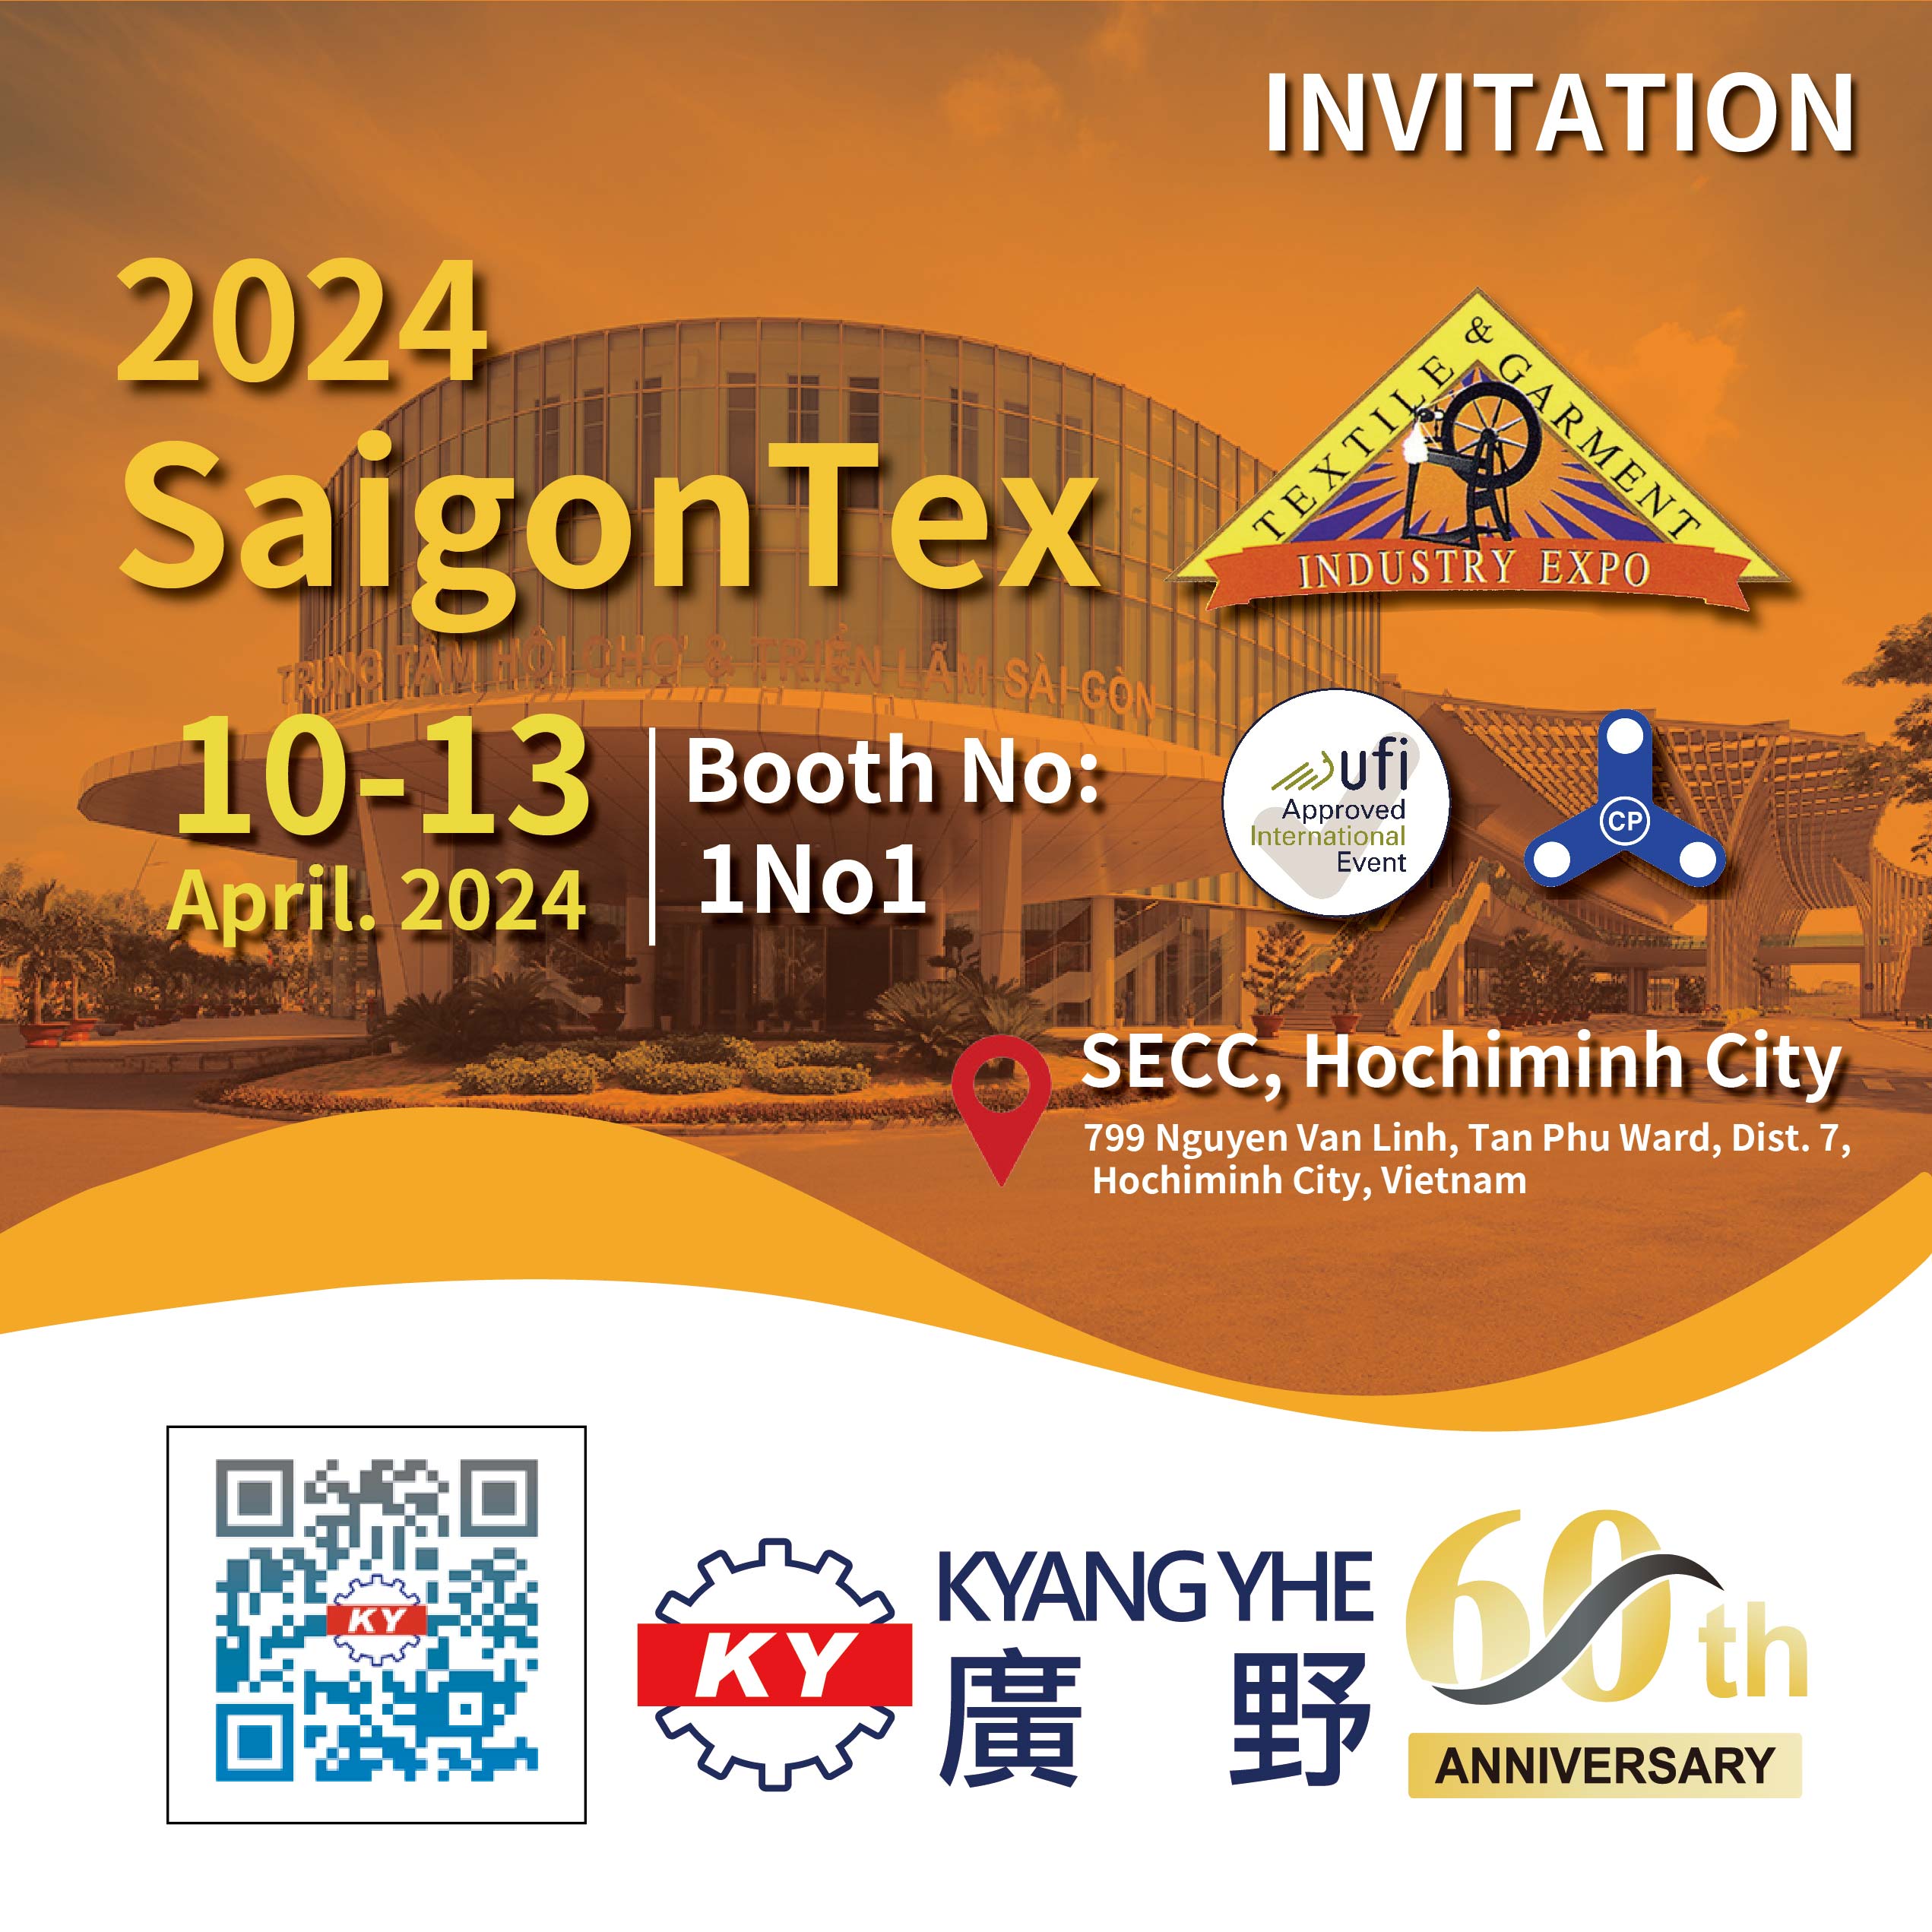 Kyang Yhe візьме участь у виставці промисловості текстилю та одягу у В'єтнамі Saigon у 2024 році